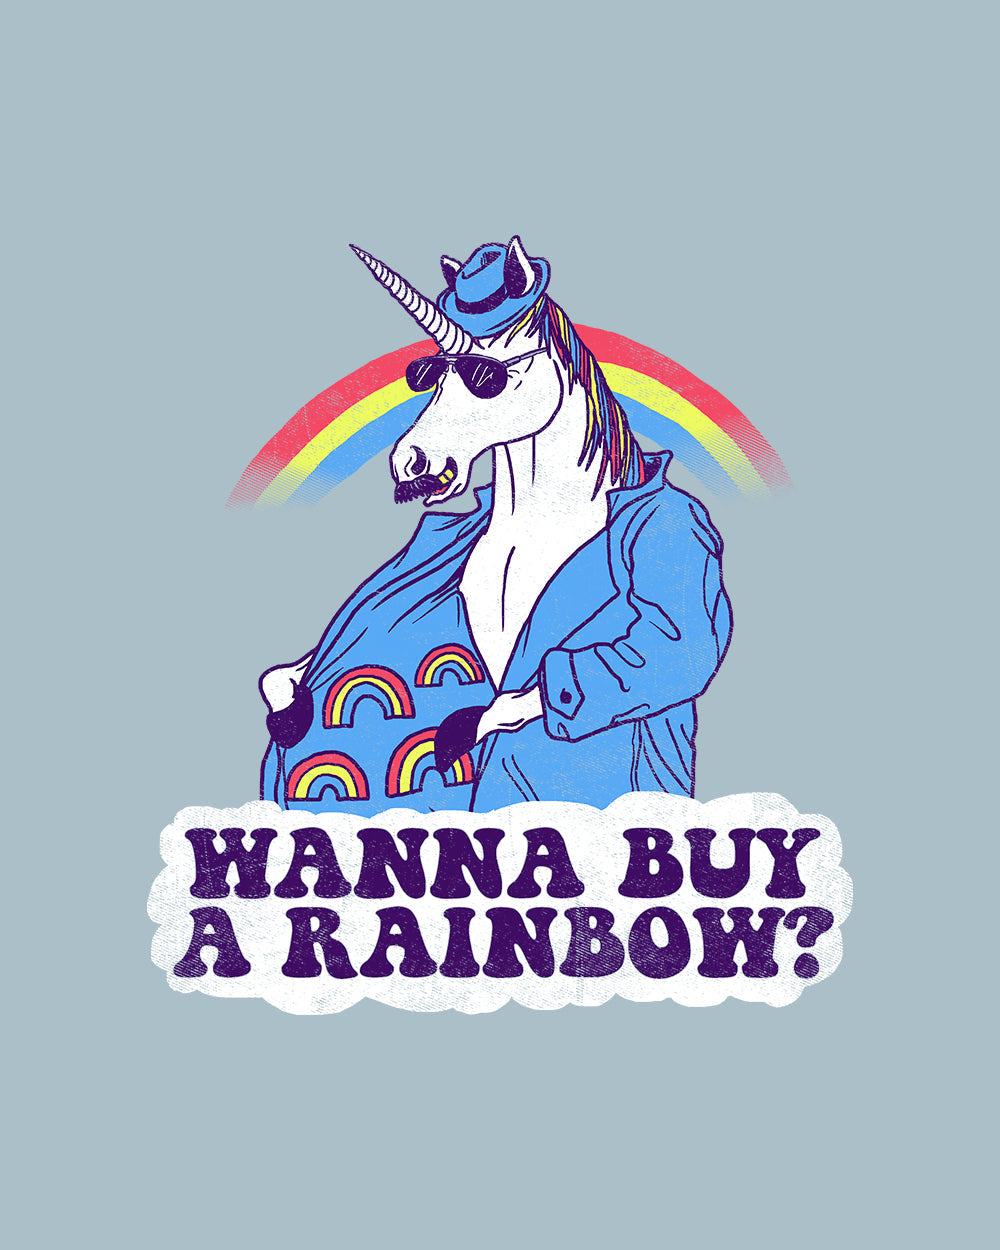 Unicorntraband T-Shirt Australia Online #colour_pale blue